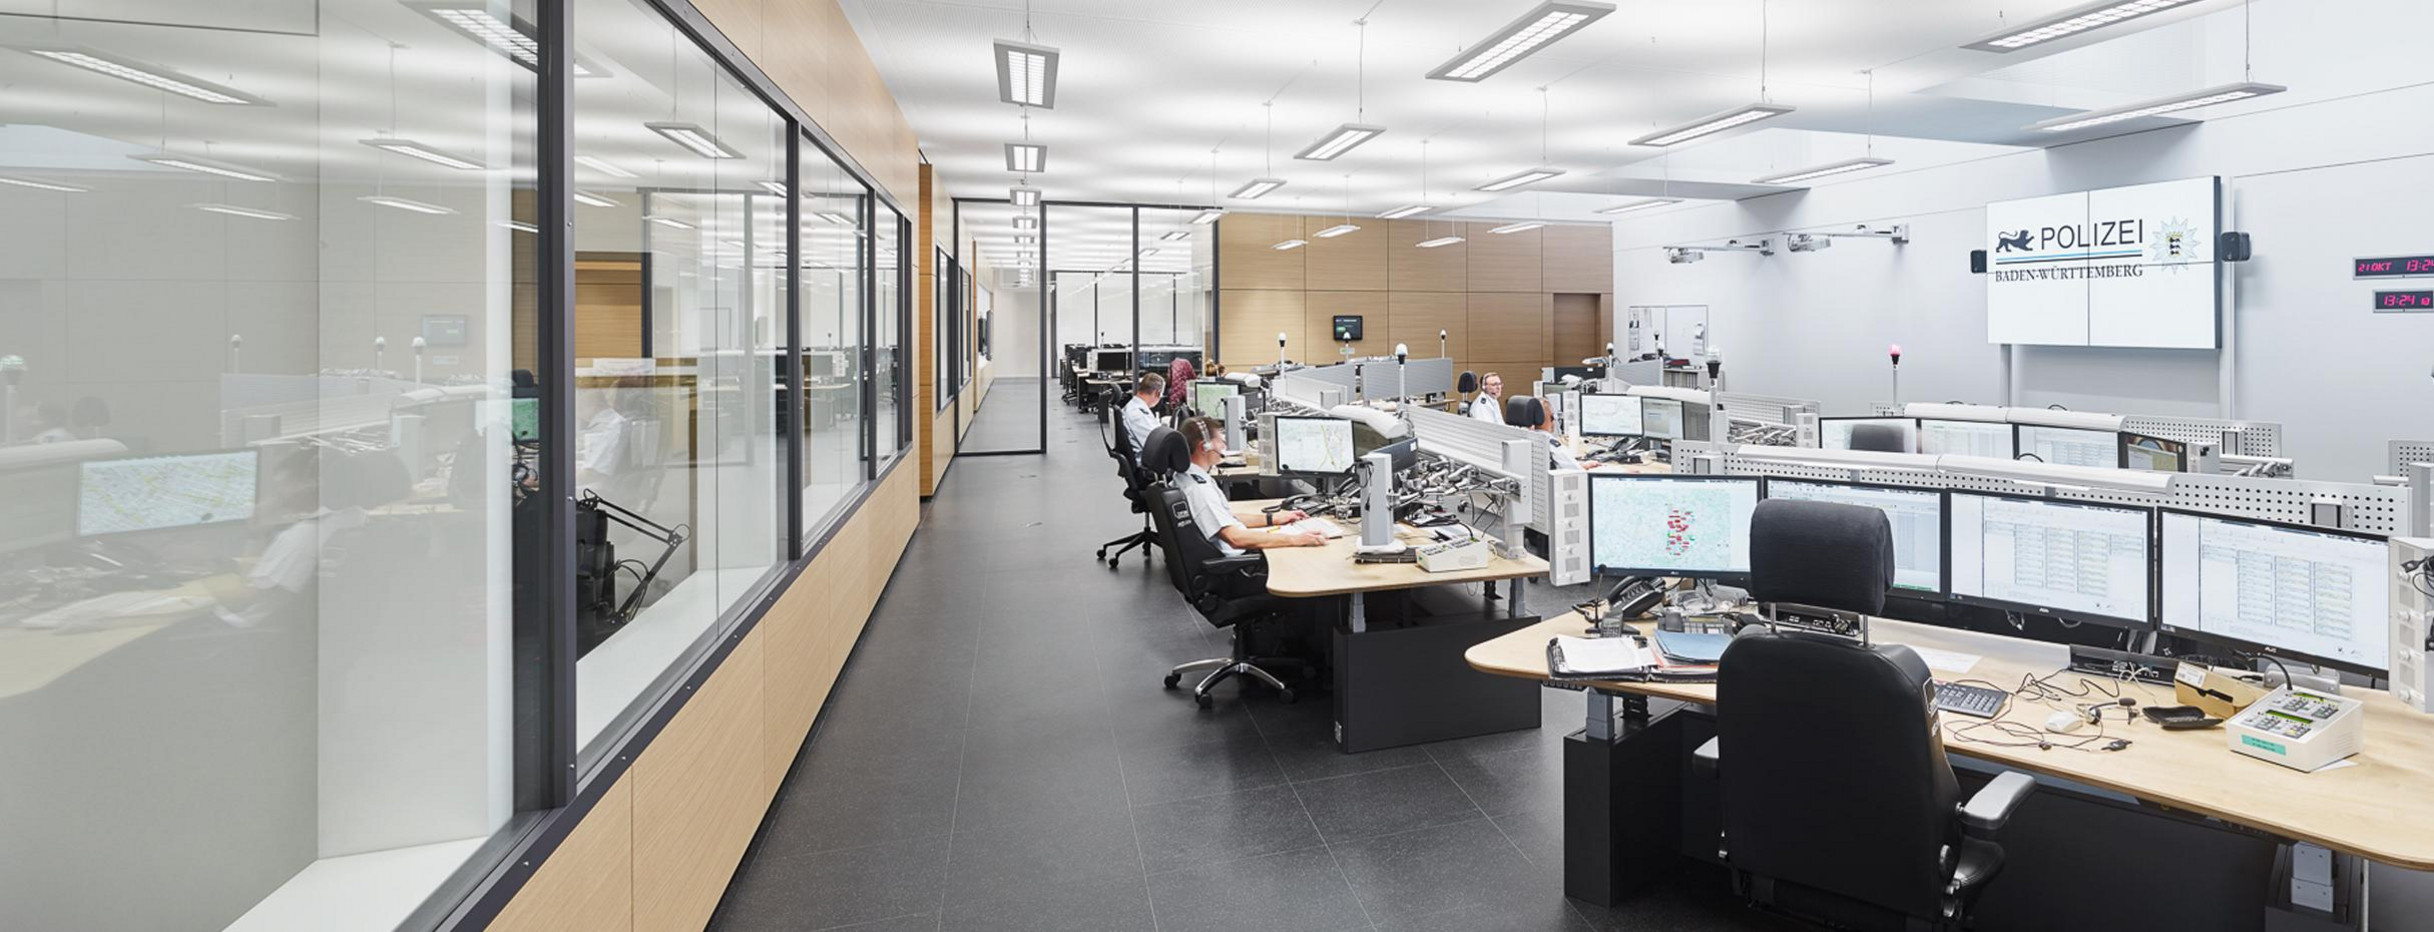 Blick in das Führungs- und Lagezentrum des Polizeipräsidiums Stuttgart. Bild: Simon Sommer